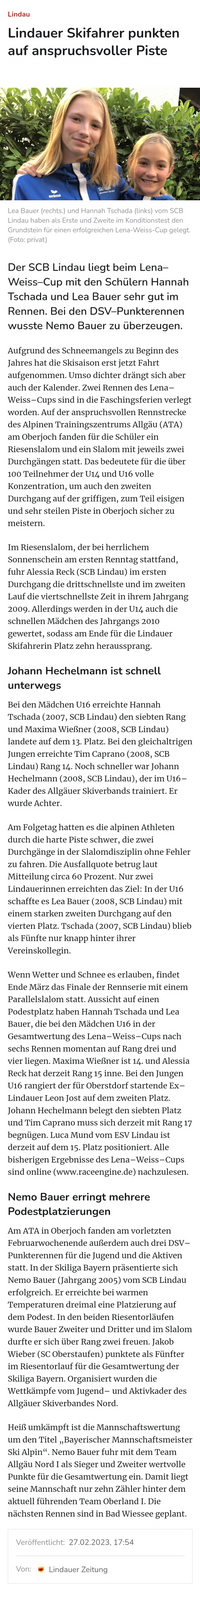 27.02.2023 Lindauer Zeitung Lena Weiss